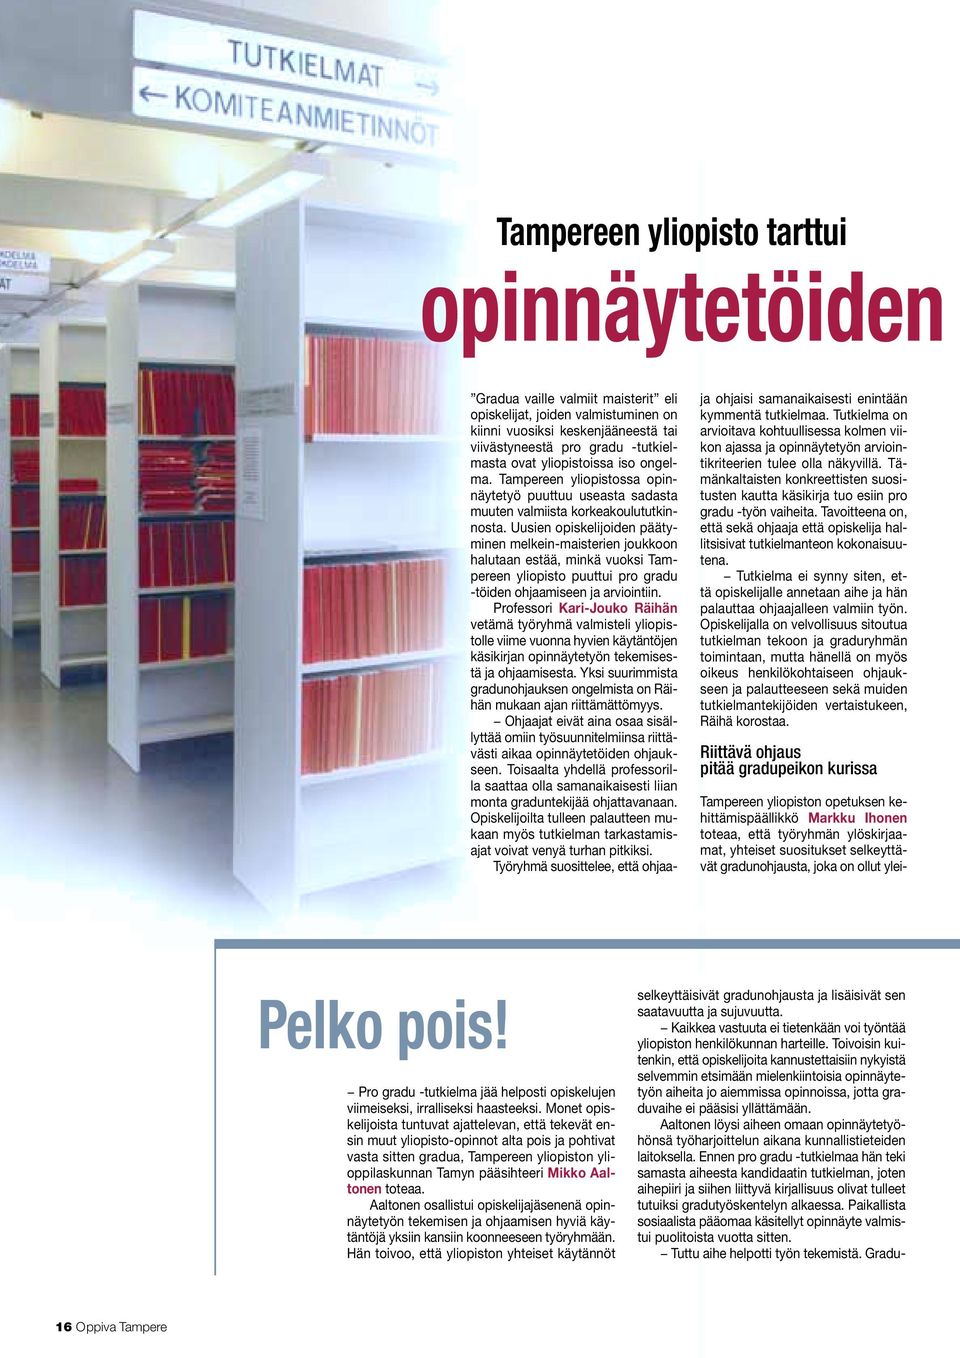 Tampereen yliopistossa opinnäytetyö puuttuu useasta sadasta muuten valmiista korkeakoulututkinnosta.